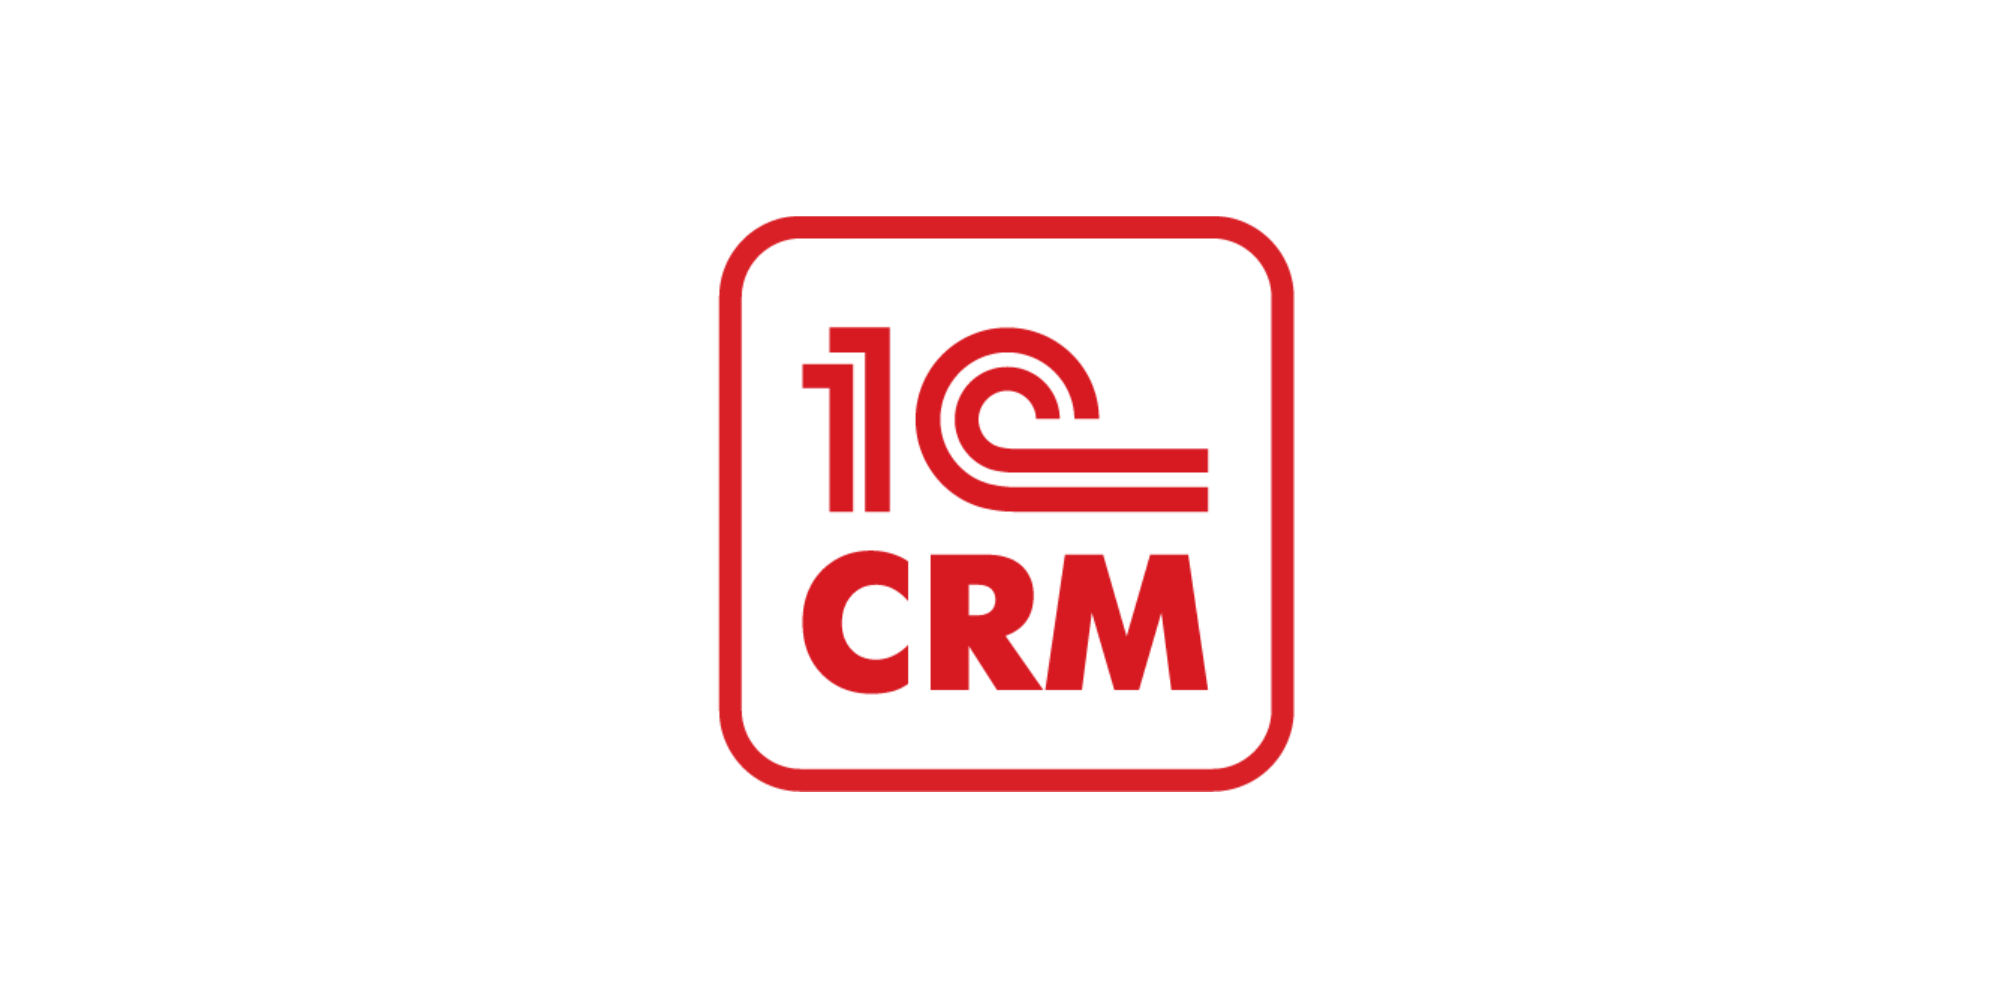 Внедрение 1C:CRM - организуйте эффективное управление клиентами